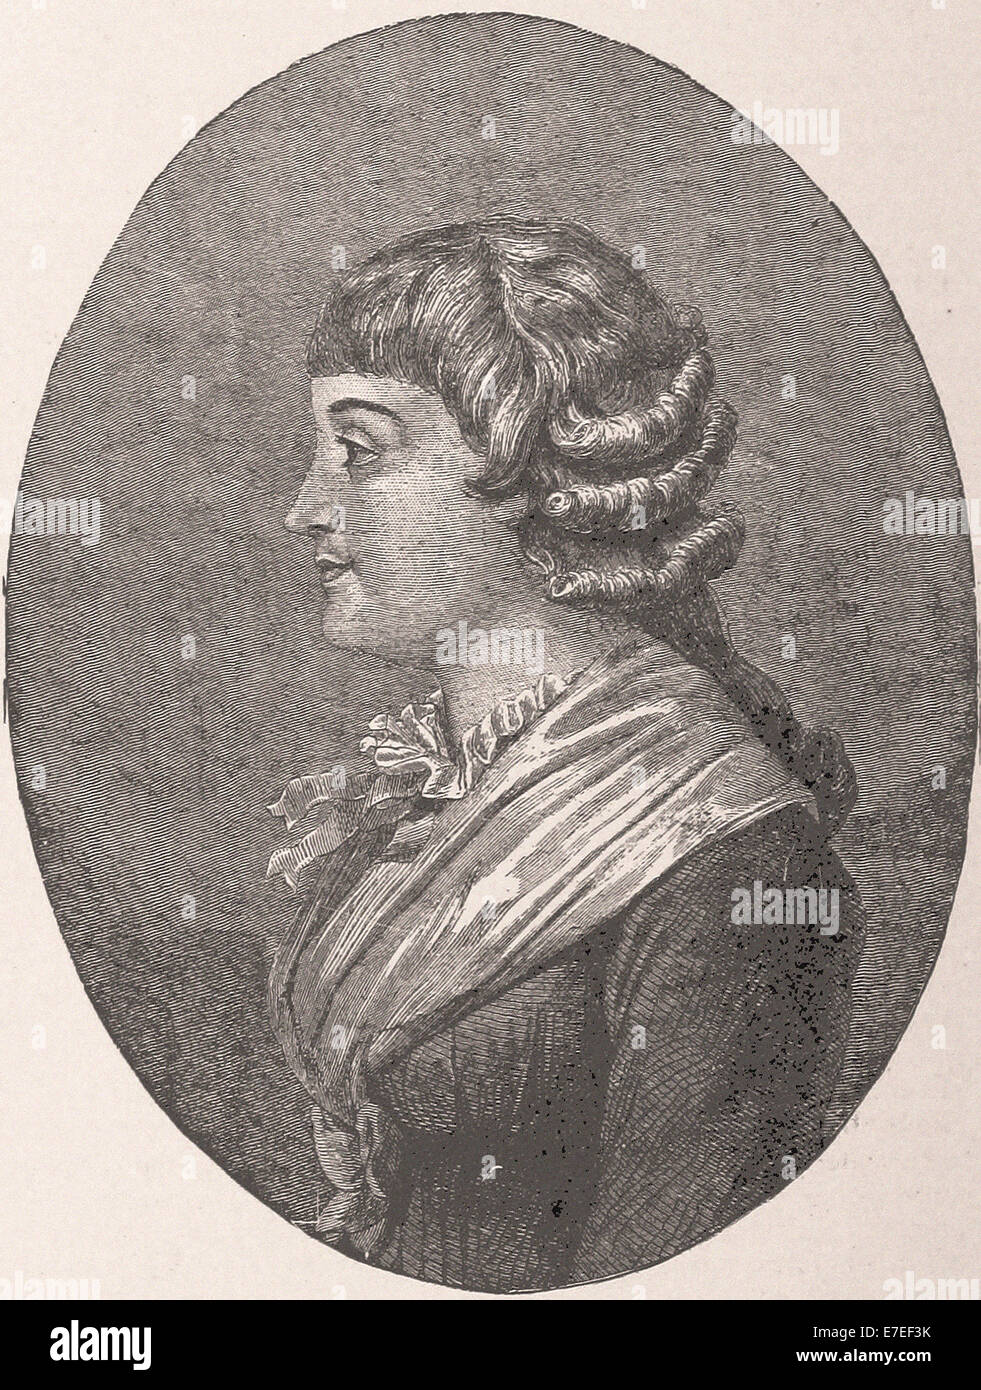 Madame Roland - La gravure - XIX ème siècle Banque D'Images